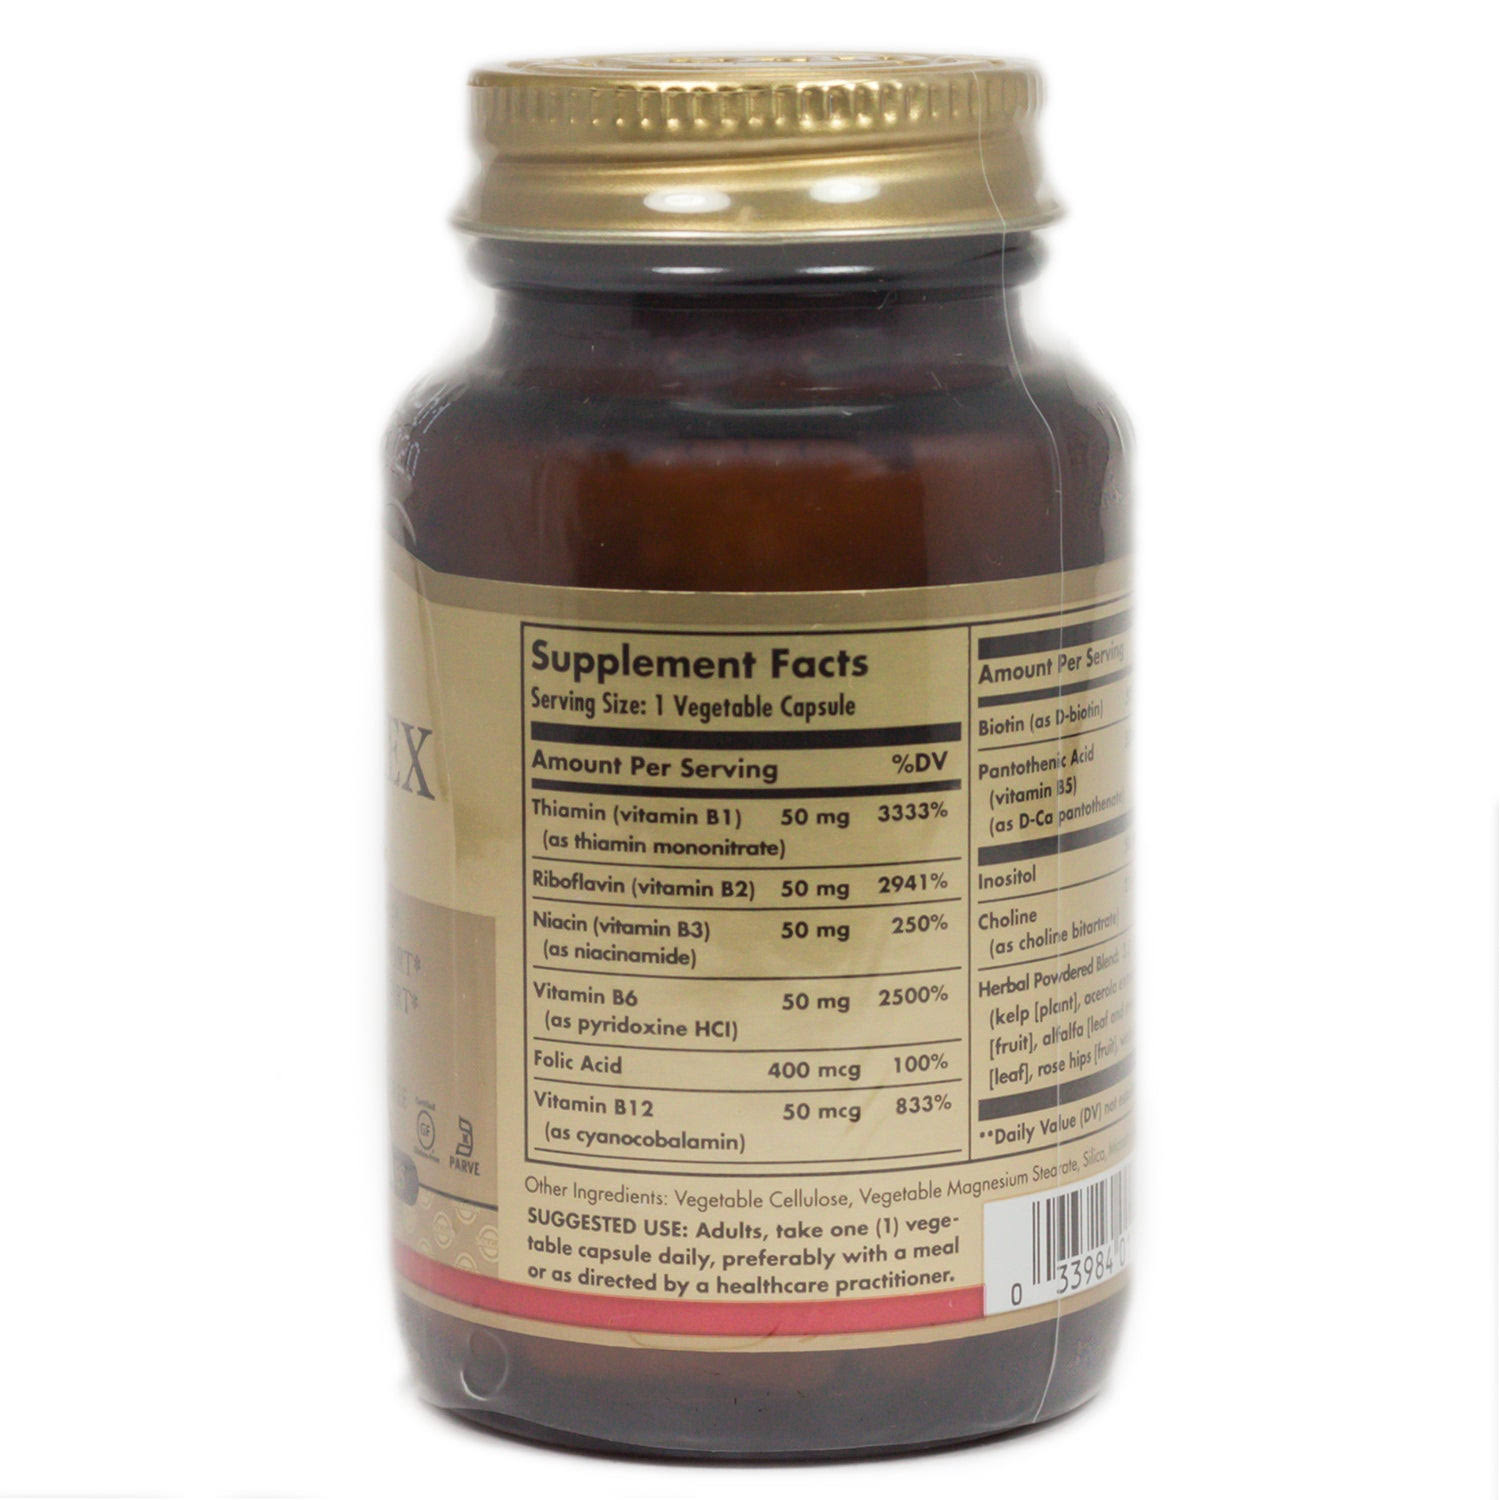 Solgar B-Complex "50" Dietary Supplement - 50 Capsules